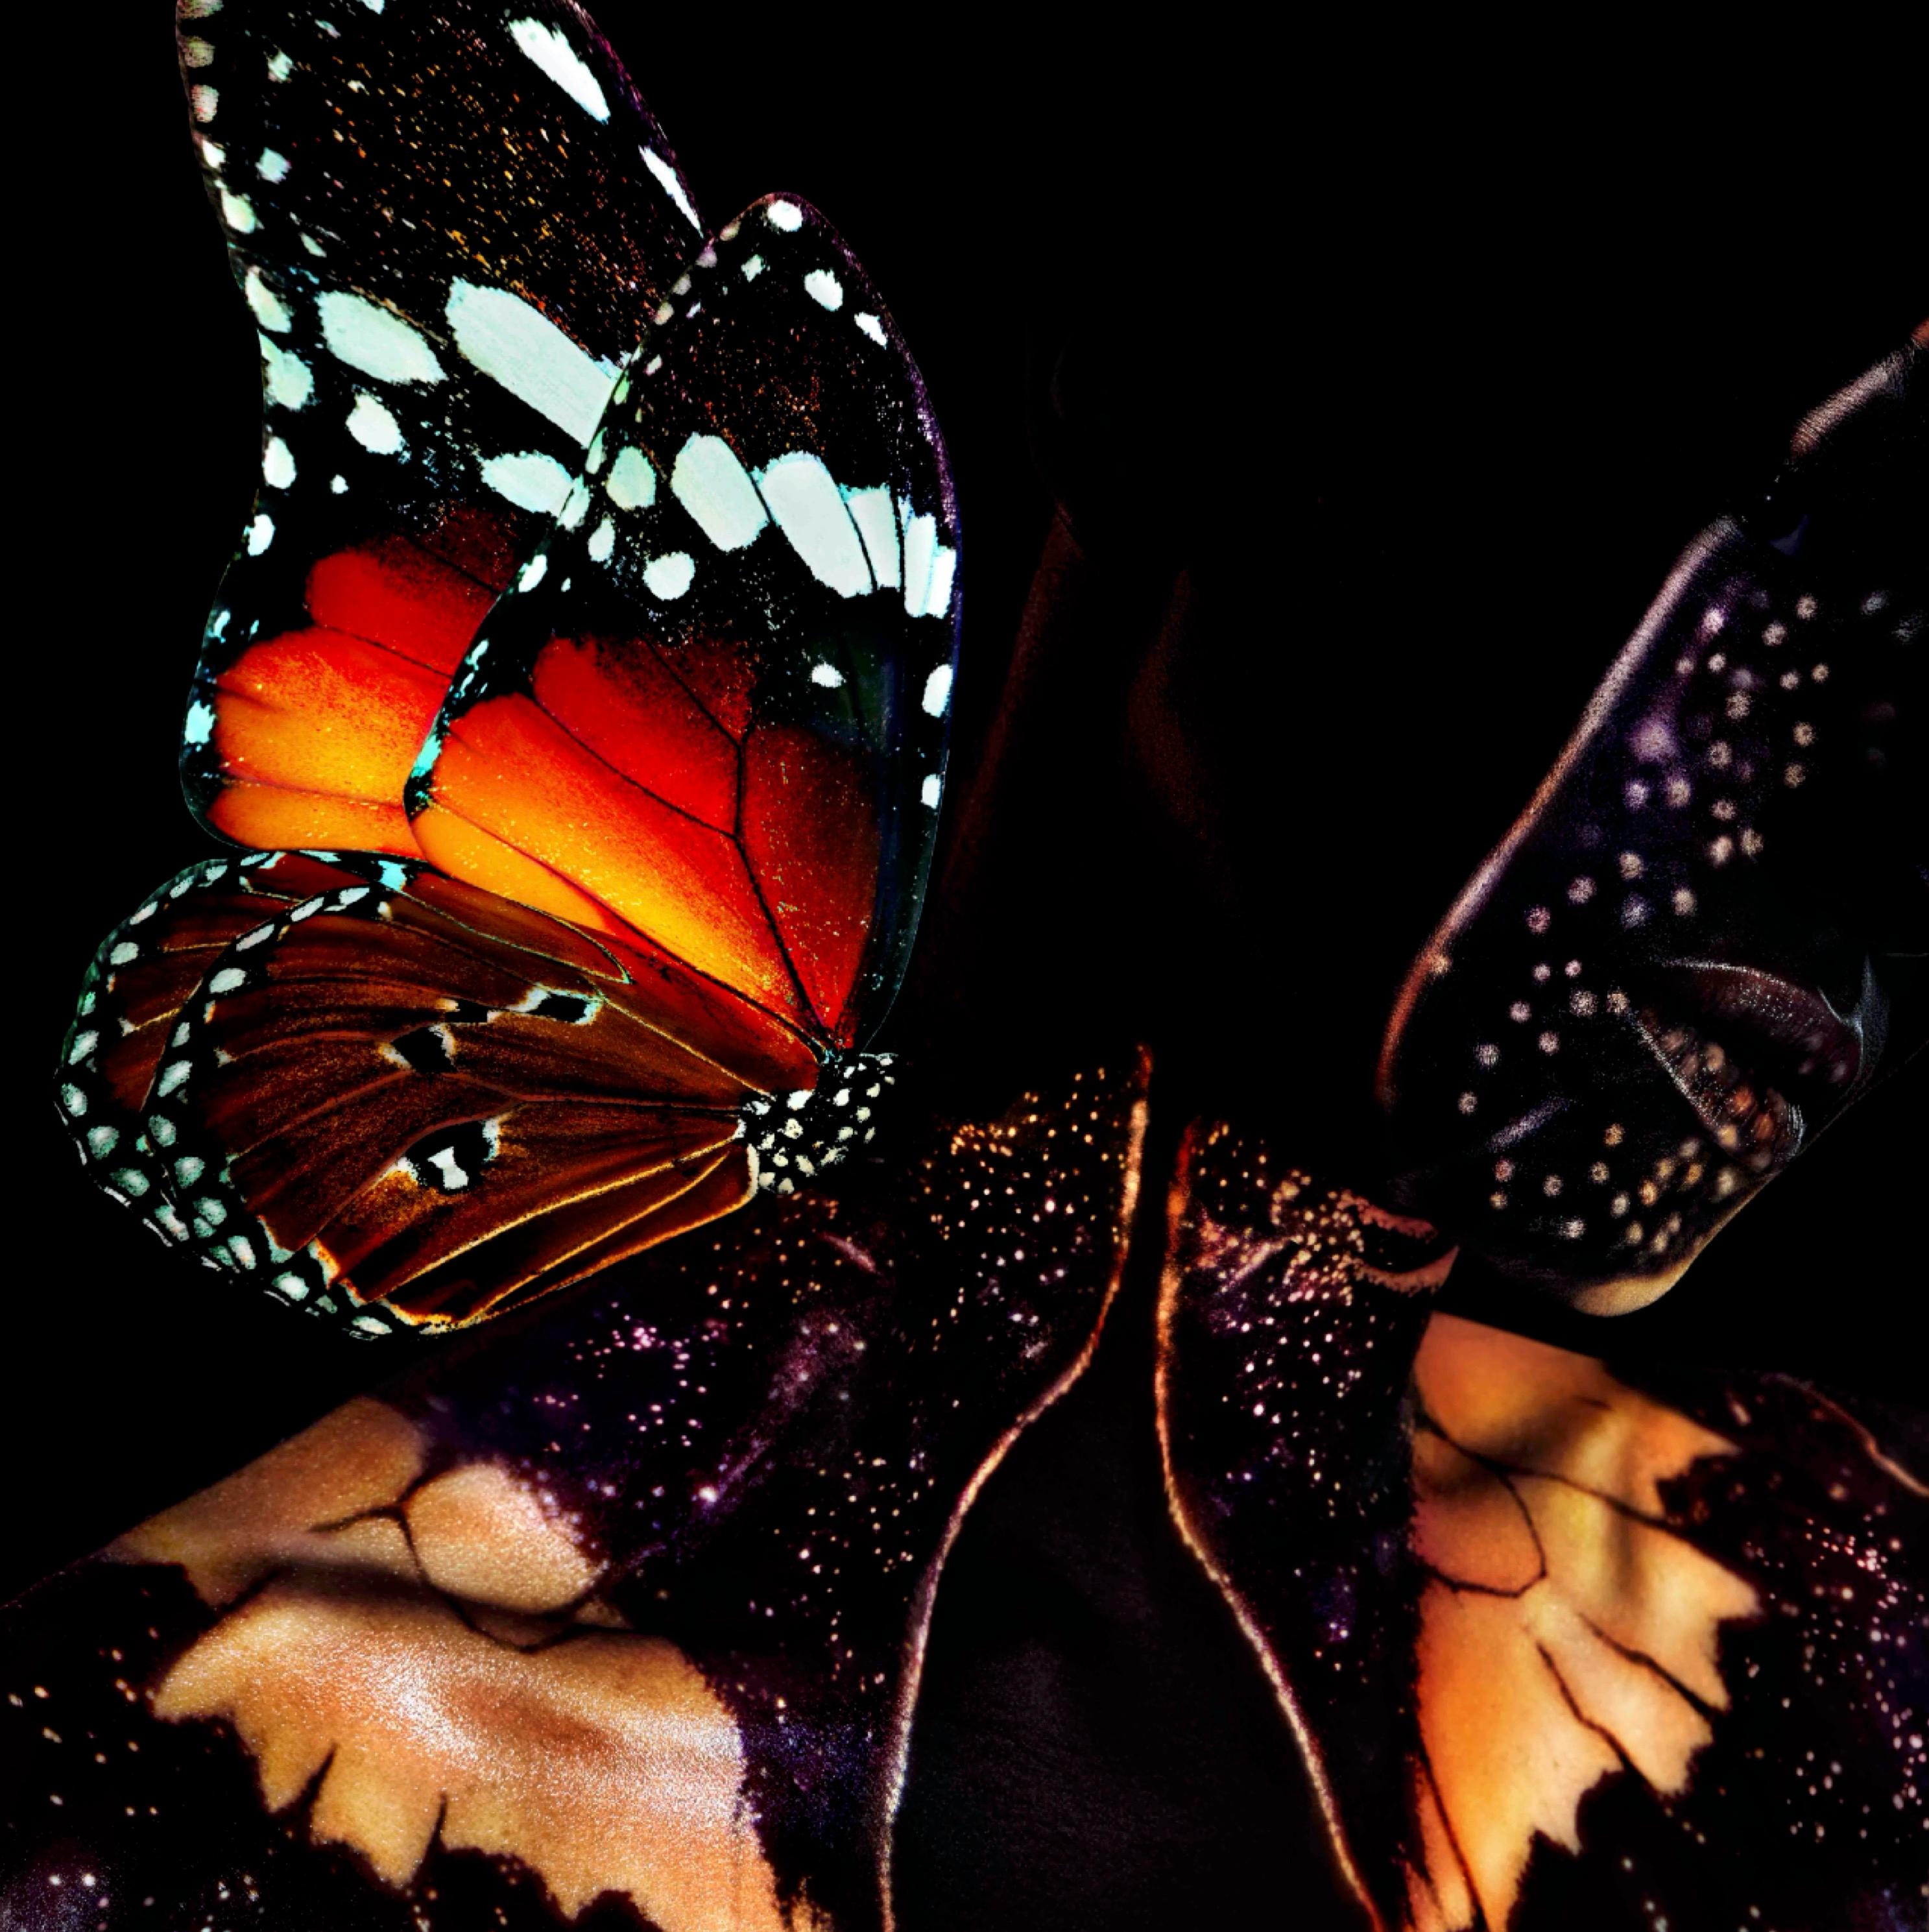 „Schmetterling 22“ Fotografie (FRAMED) 50" x 50" Zoll Auflage 2/8 von Giuliano Bekor

Titel: Schmetterling B22
Jahr: 2018
Druckgröße: 50" x 50" Zoll Beschnittzugabe 
Gerahmte Größe: 52" x 52" Zoll 
Auflage: 2/8
Künstlernachweis: 2

Medium:  
Das